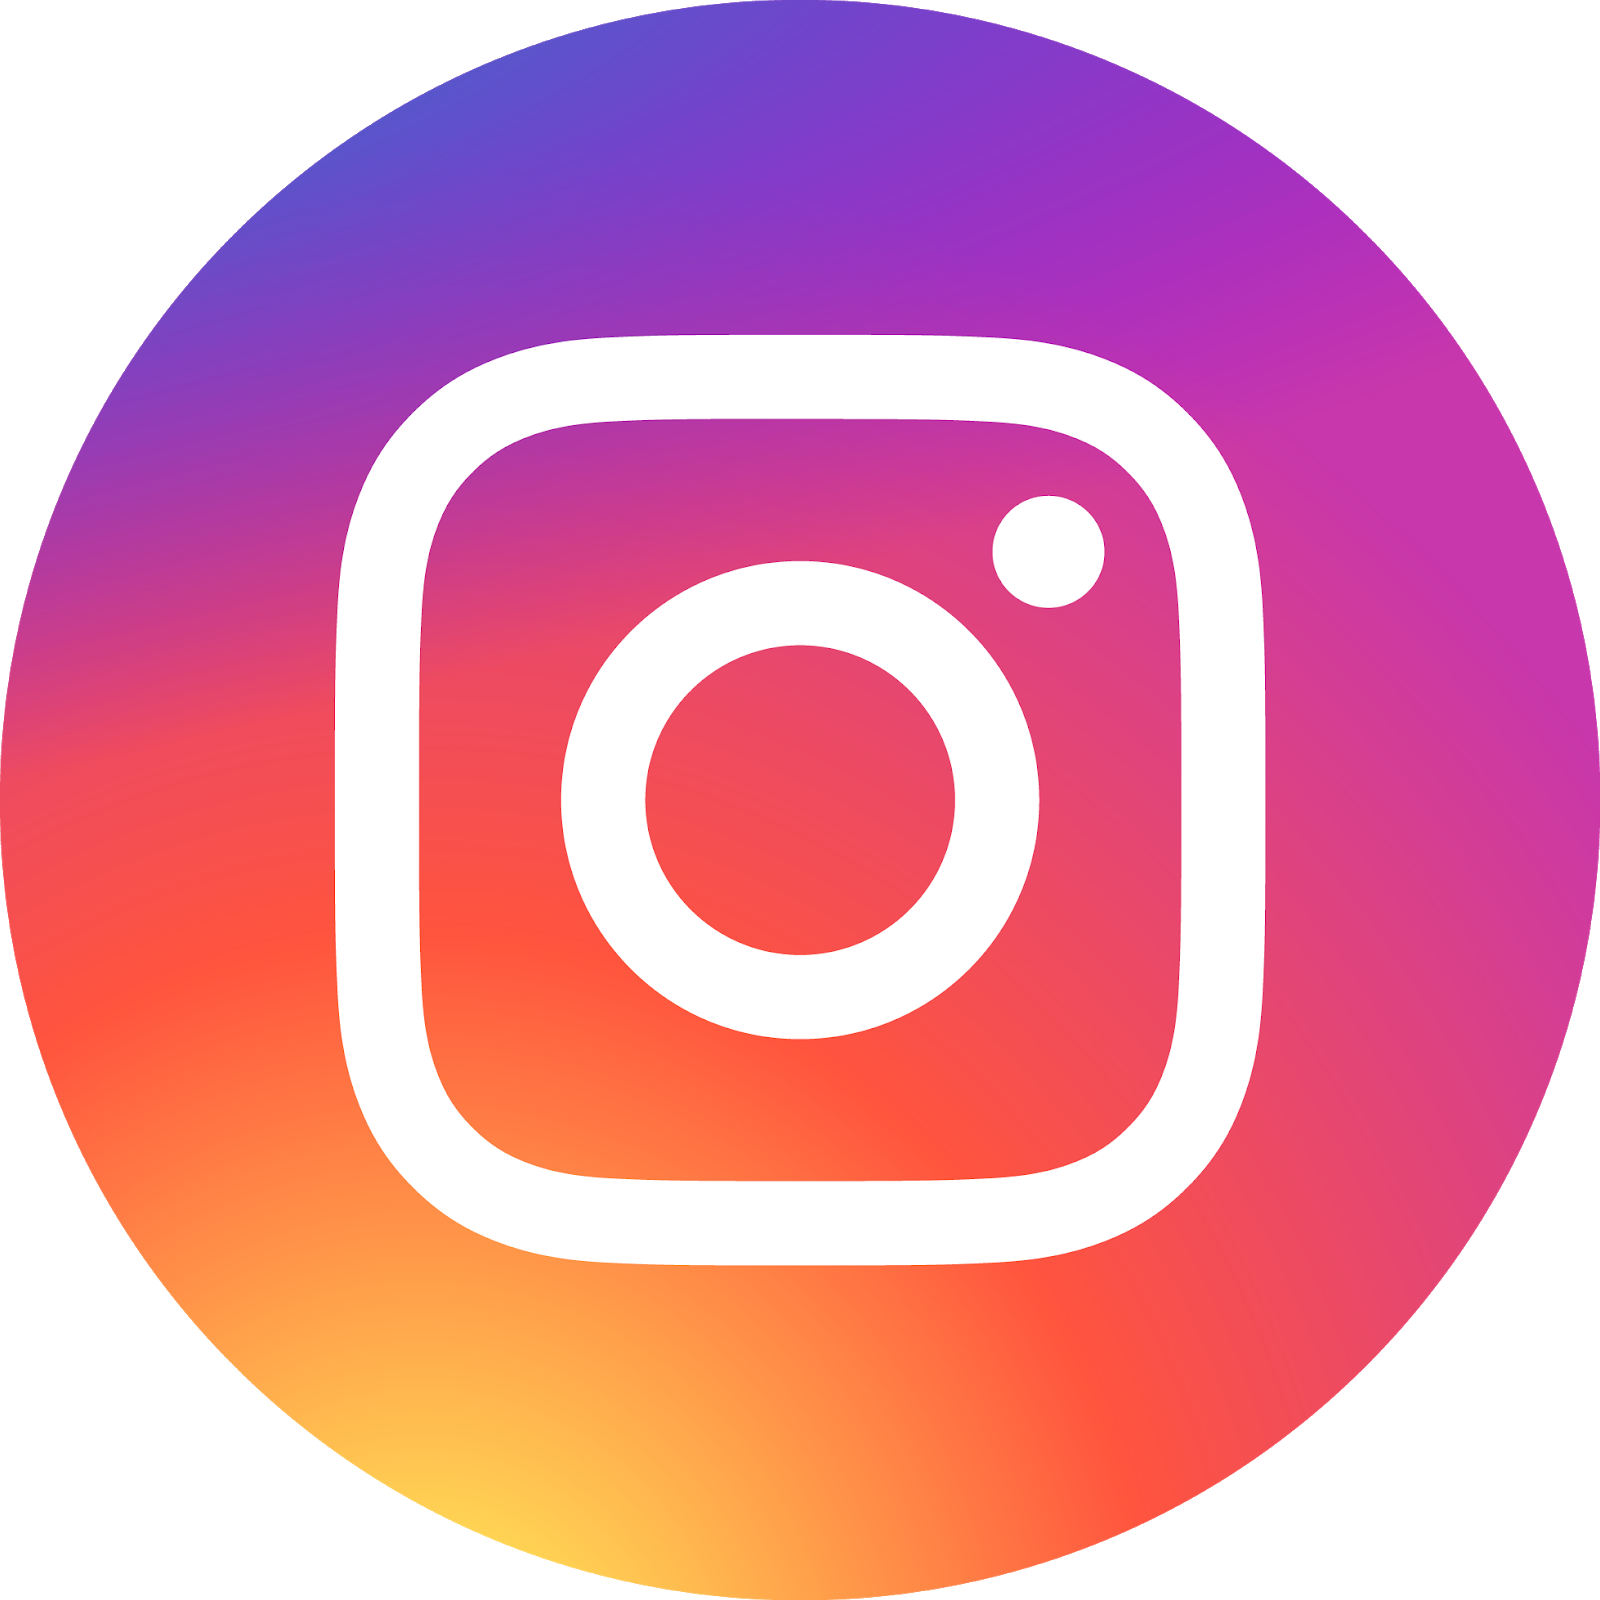 instagram logo download vector